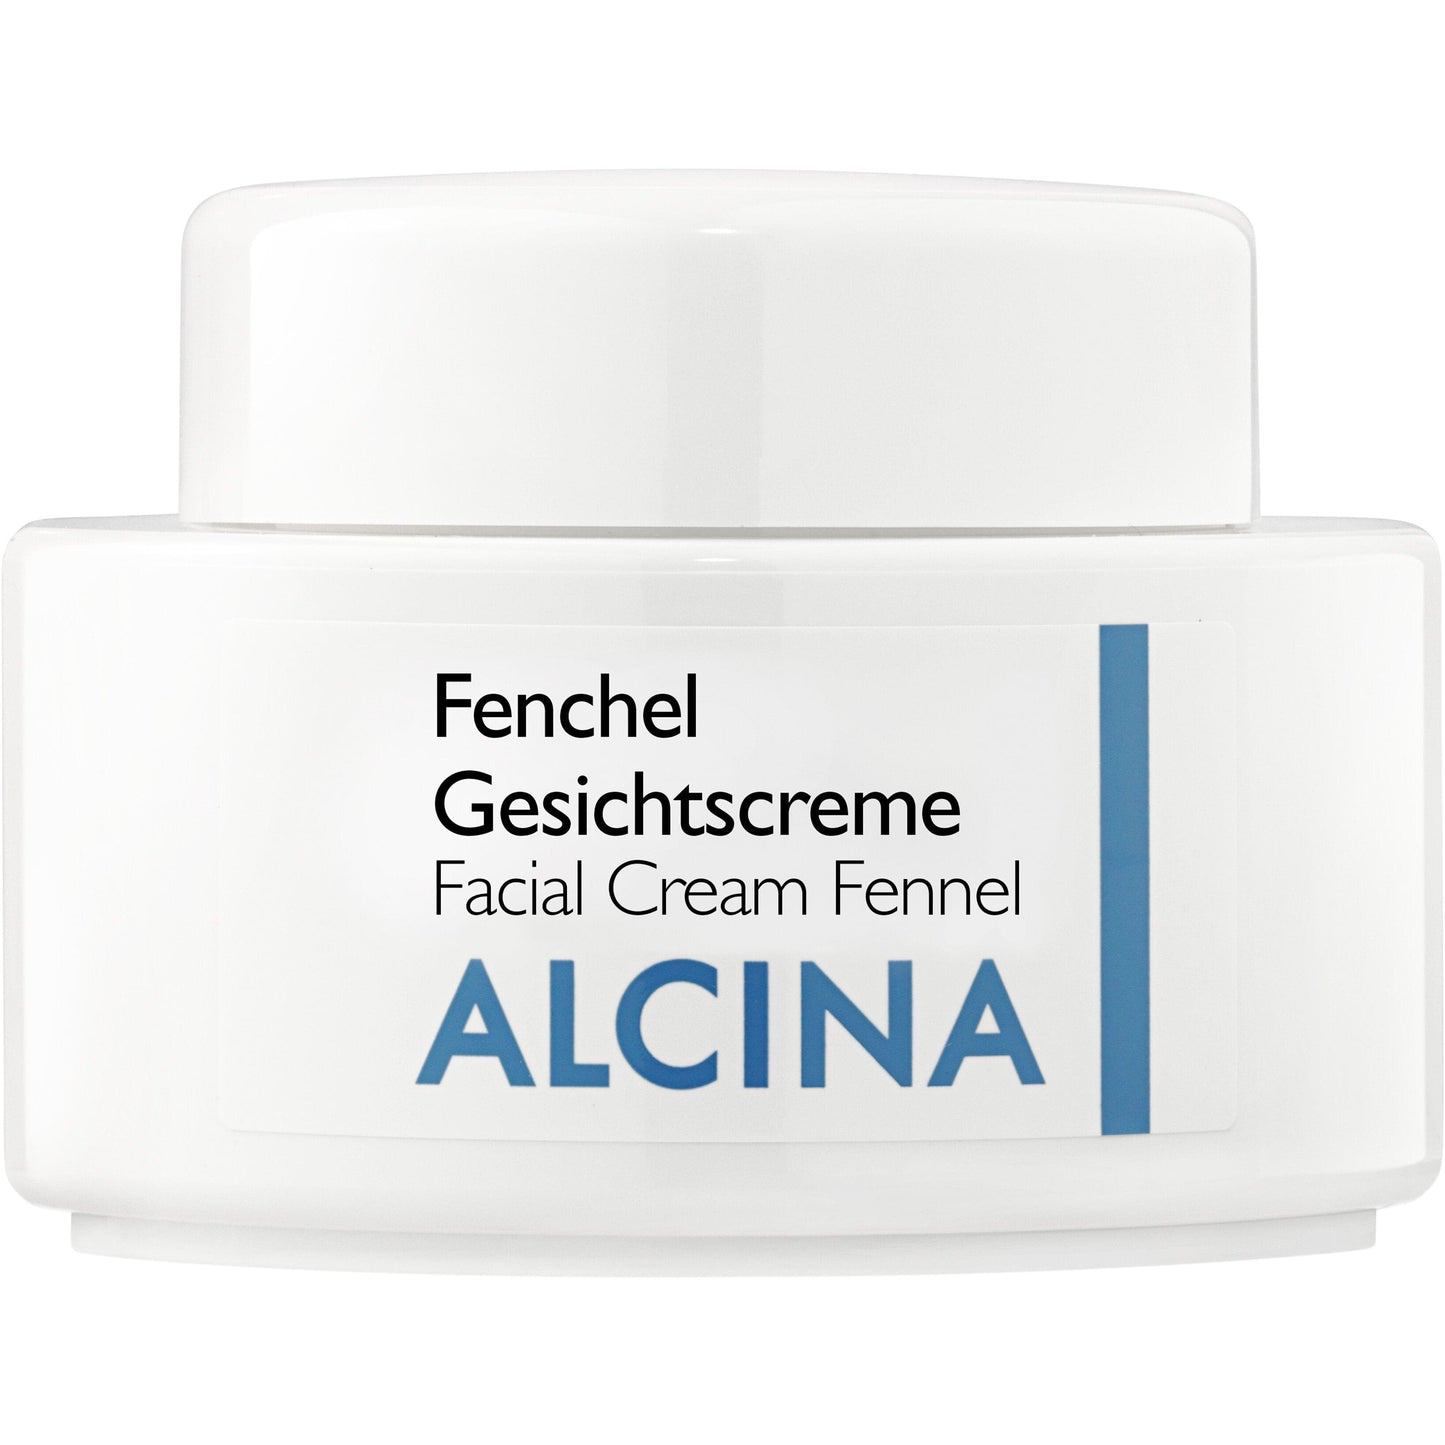 ALCINA Fenchel Creme  100ml by Frisör Schäfer Online Shop.